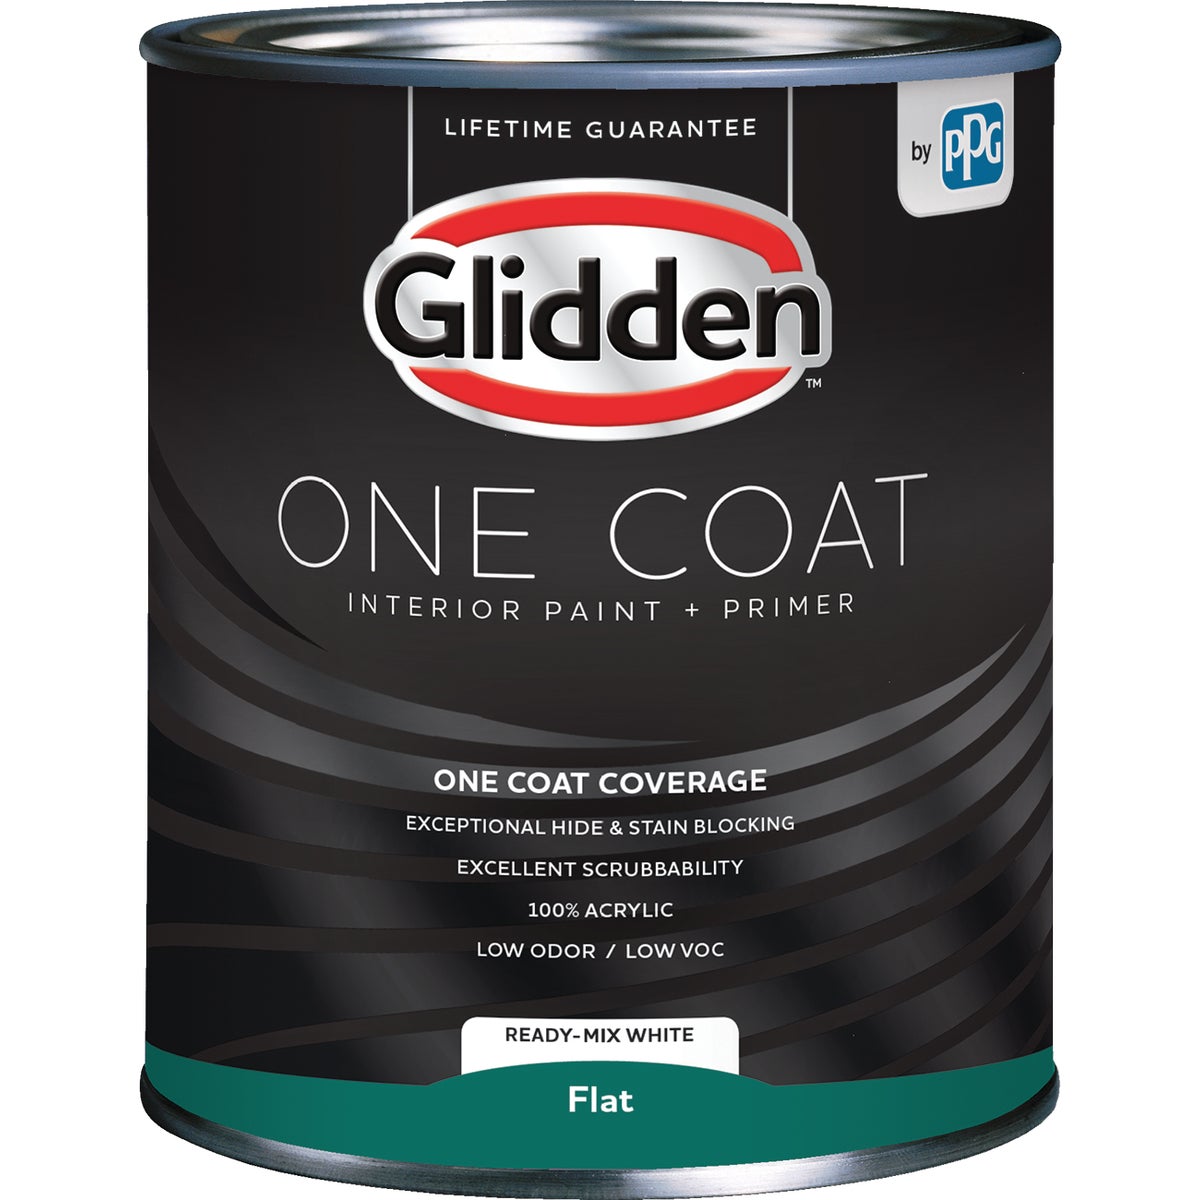 Glidden One Coat Interior Paint + Primer Flat Ready Mix White Quart